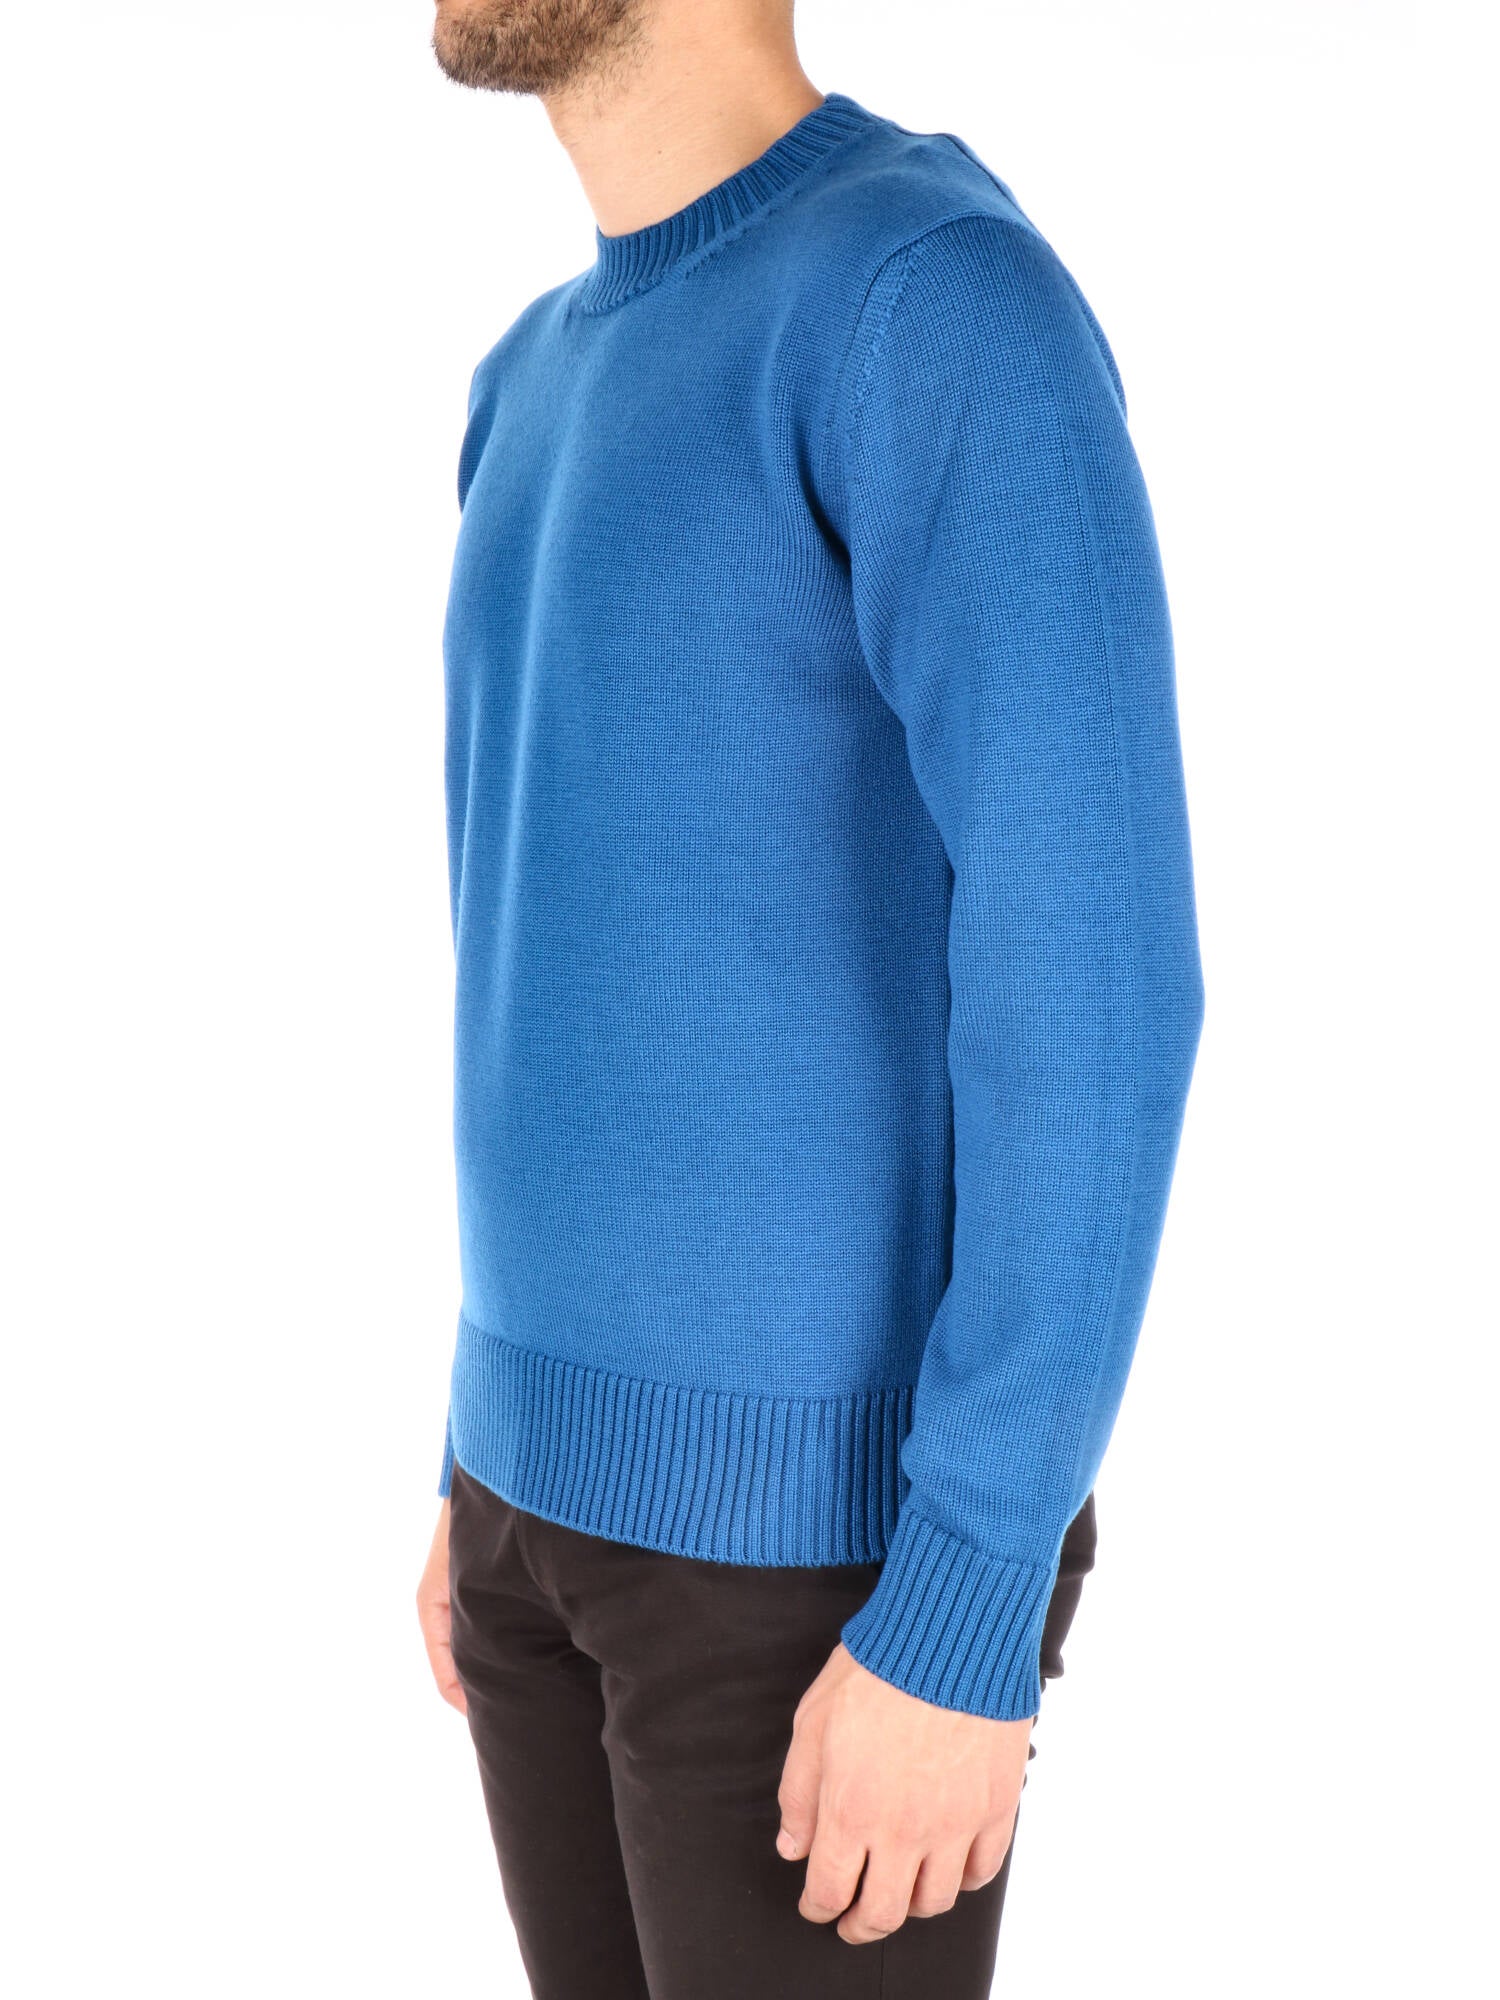 Altea uomo maglione girocollo lana blu